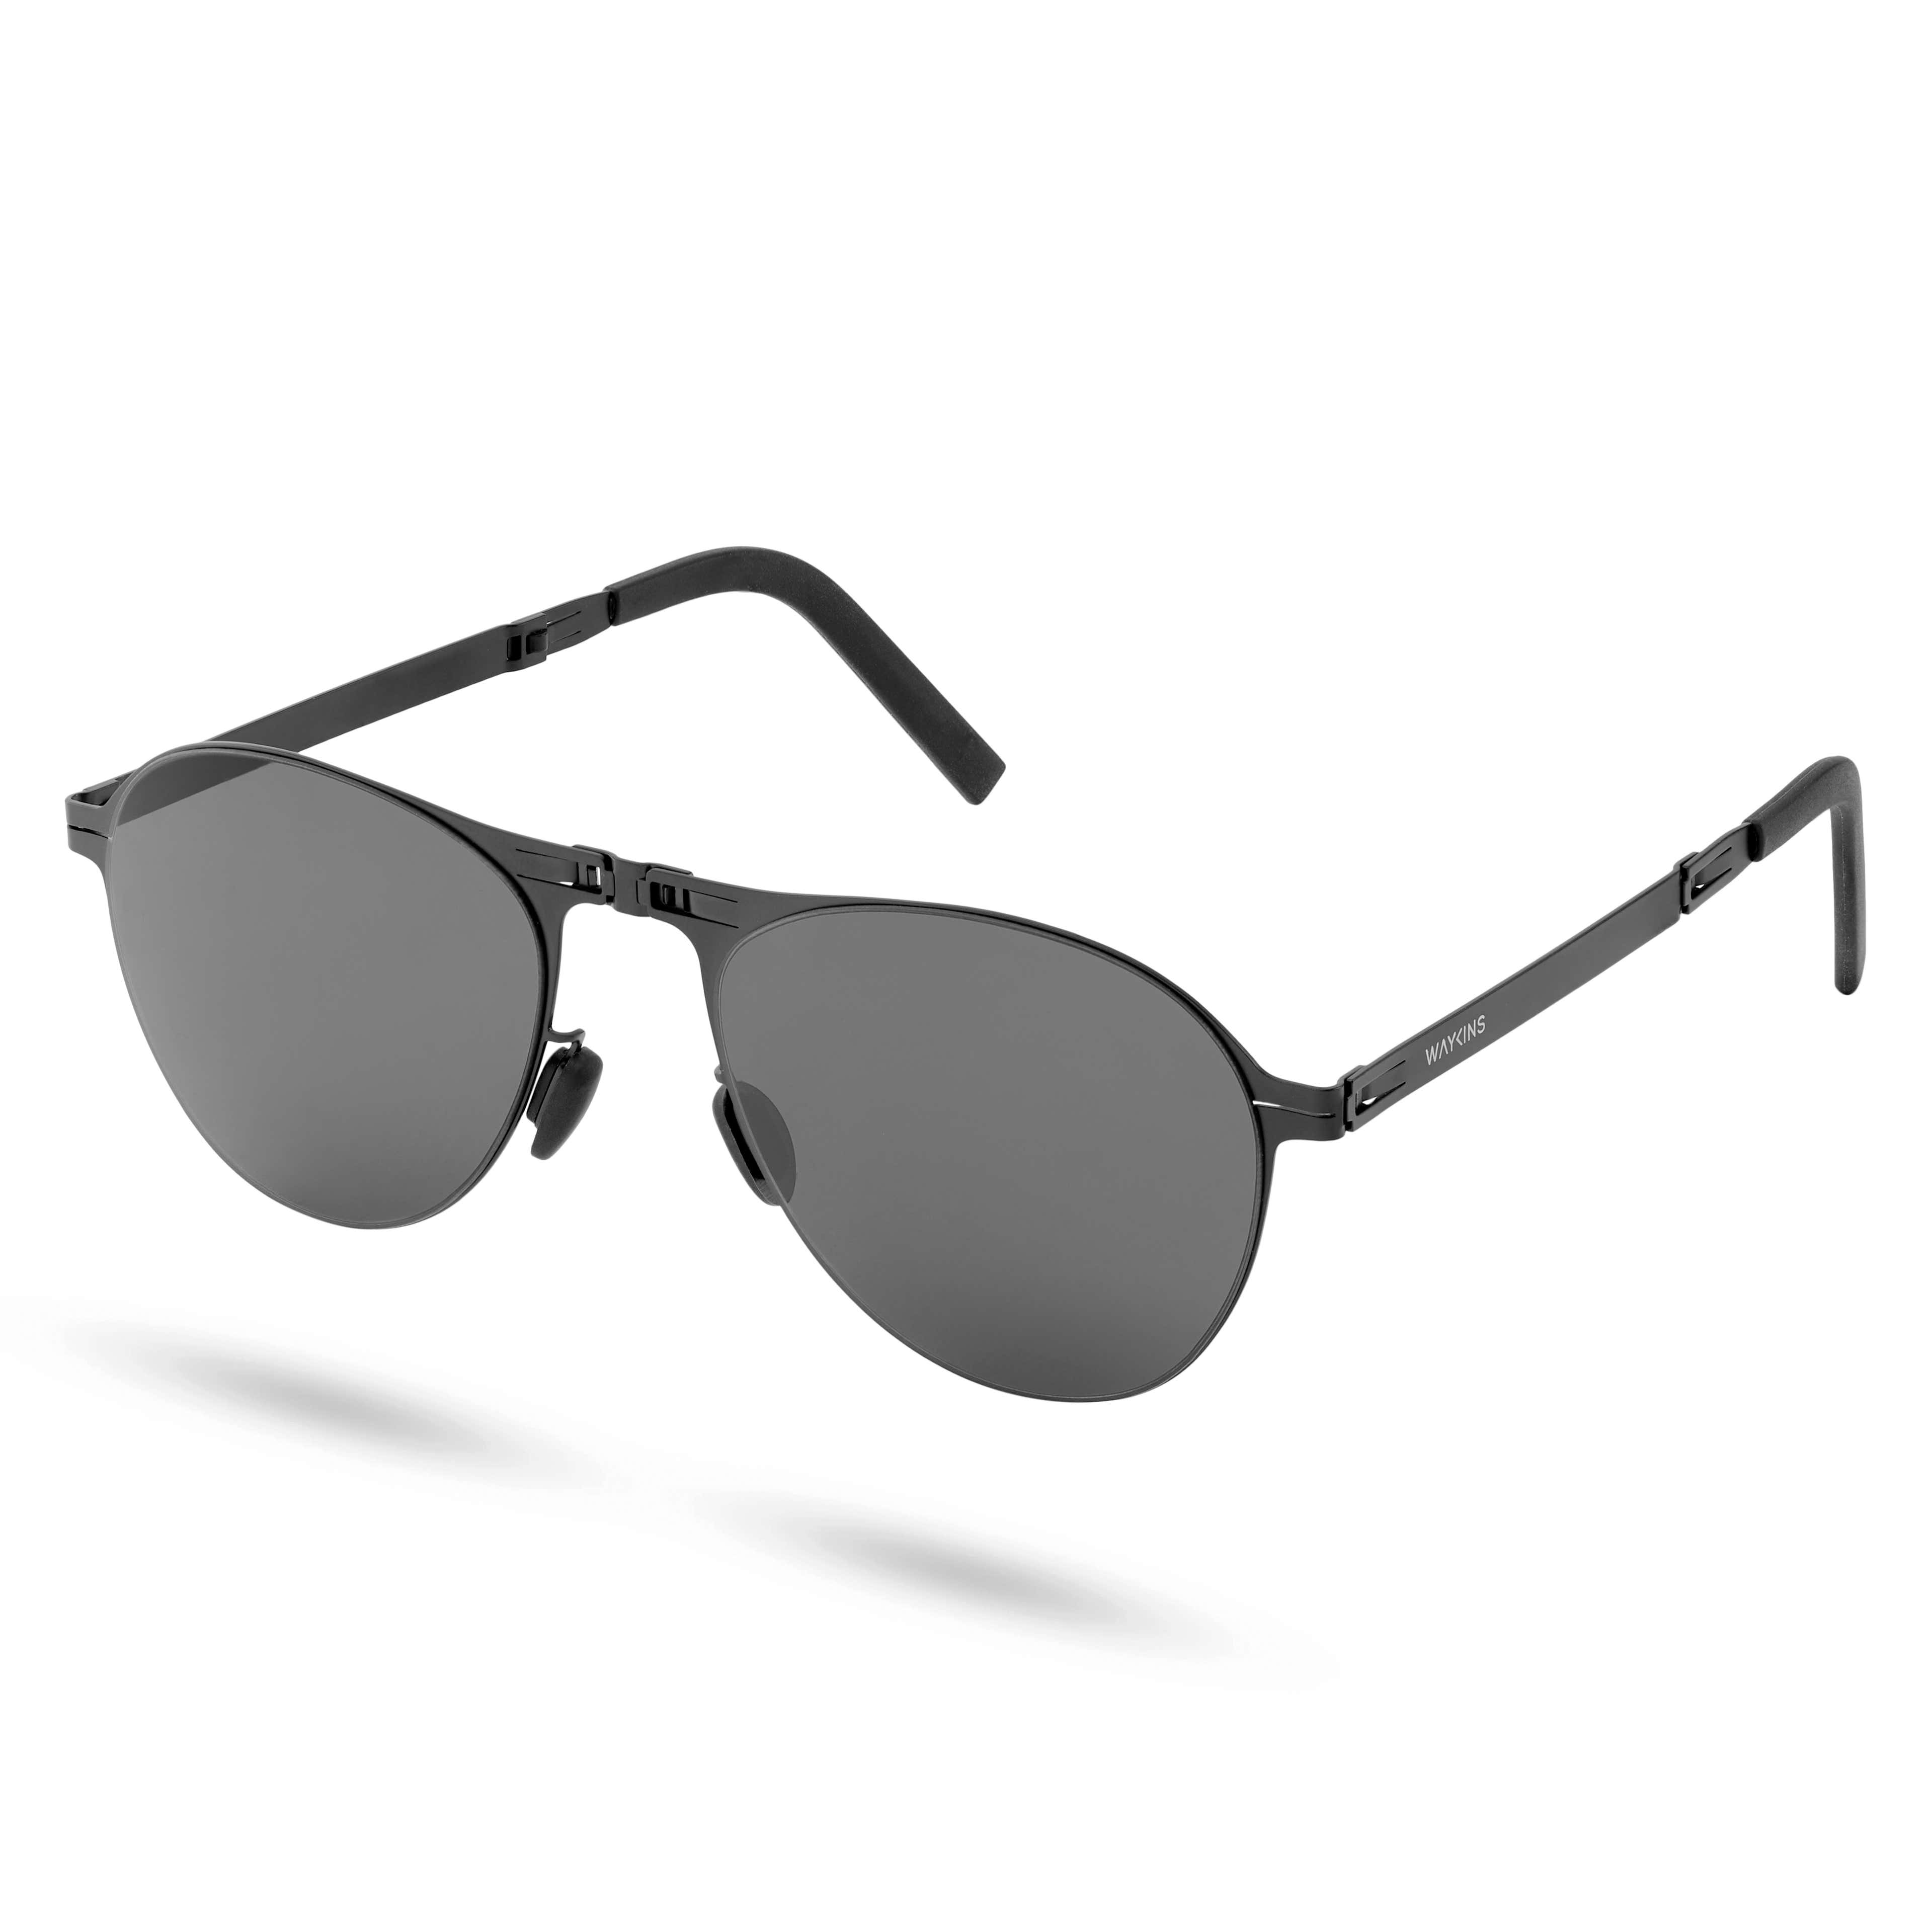 Skládací sluneční brýle Whitmore Thea v černé barvě